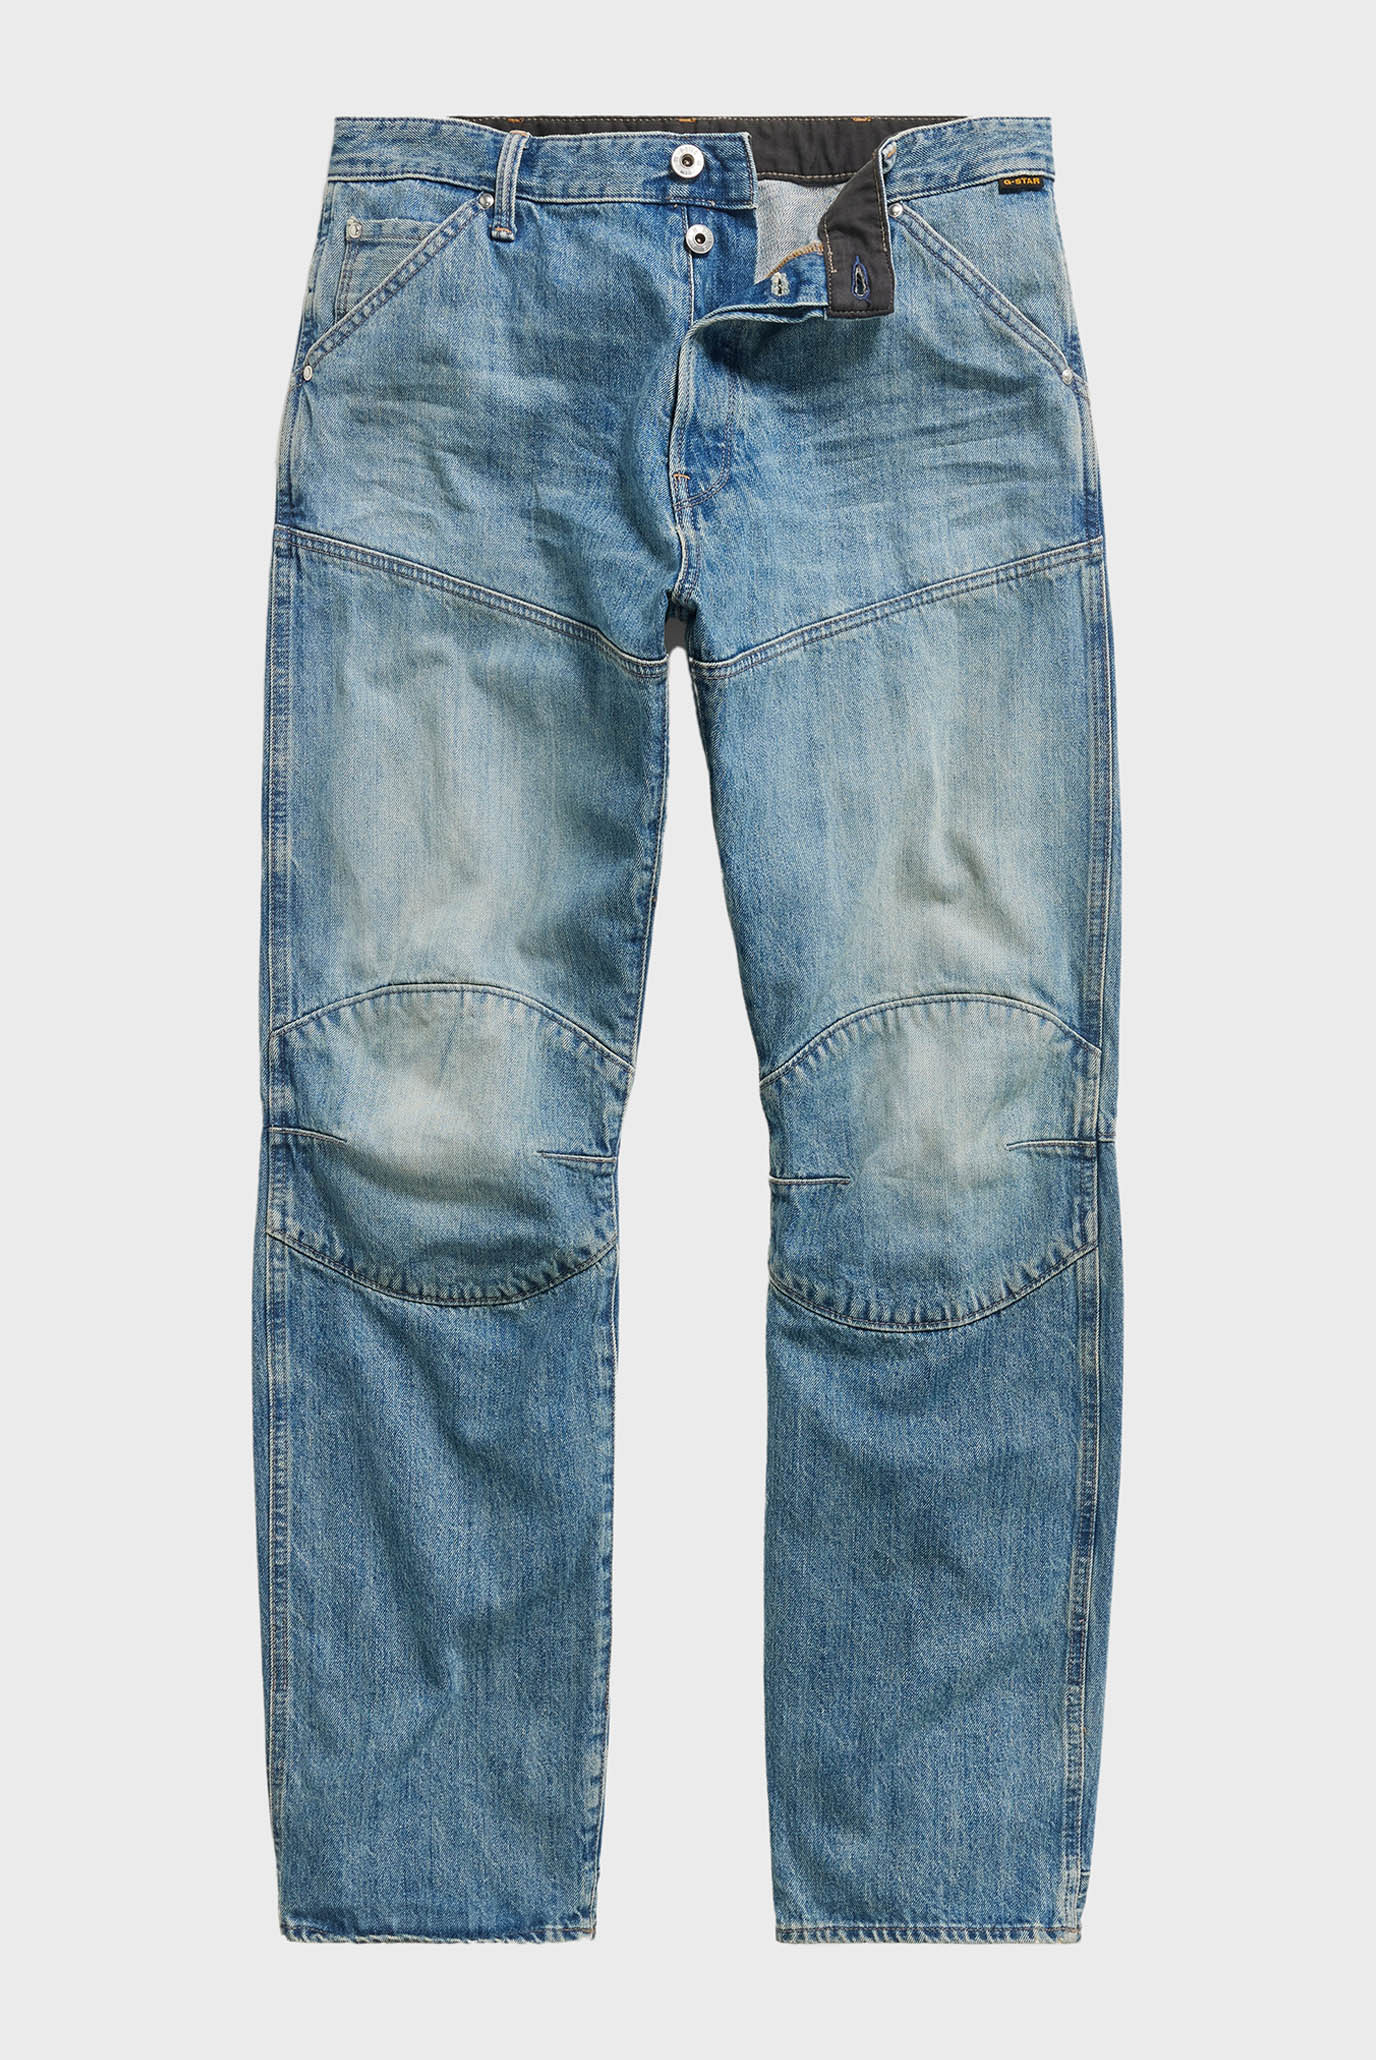 Чоловічі сині джинси 5620 3D Regular 1